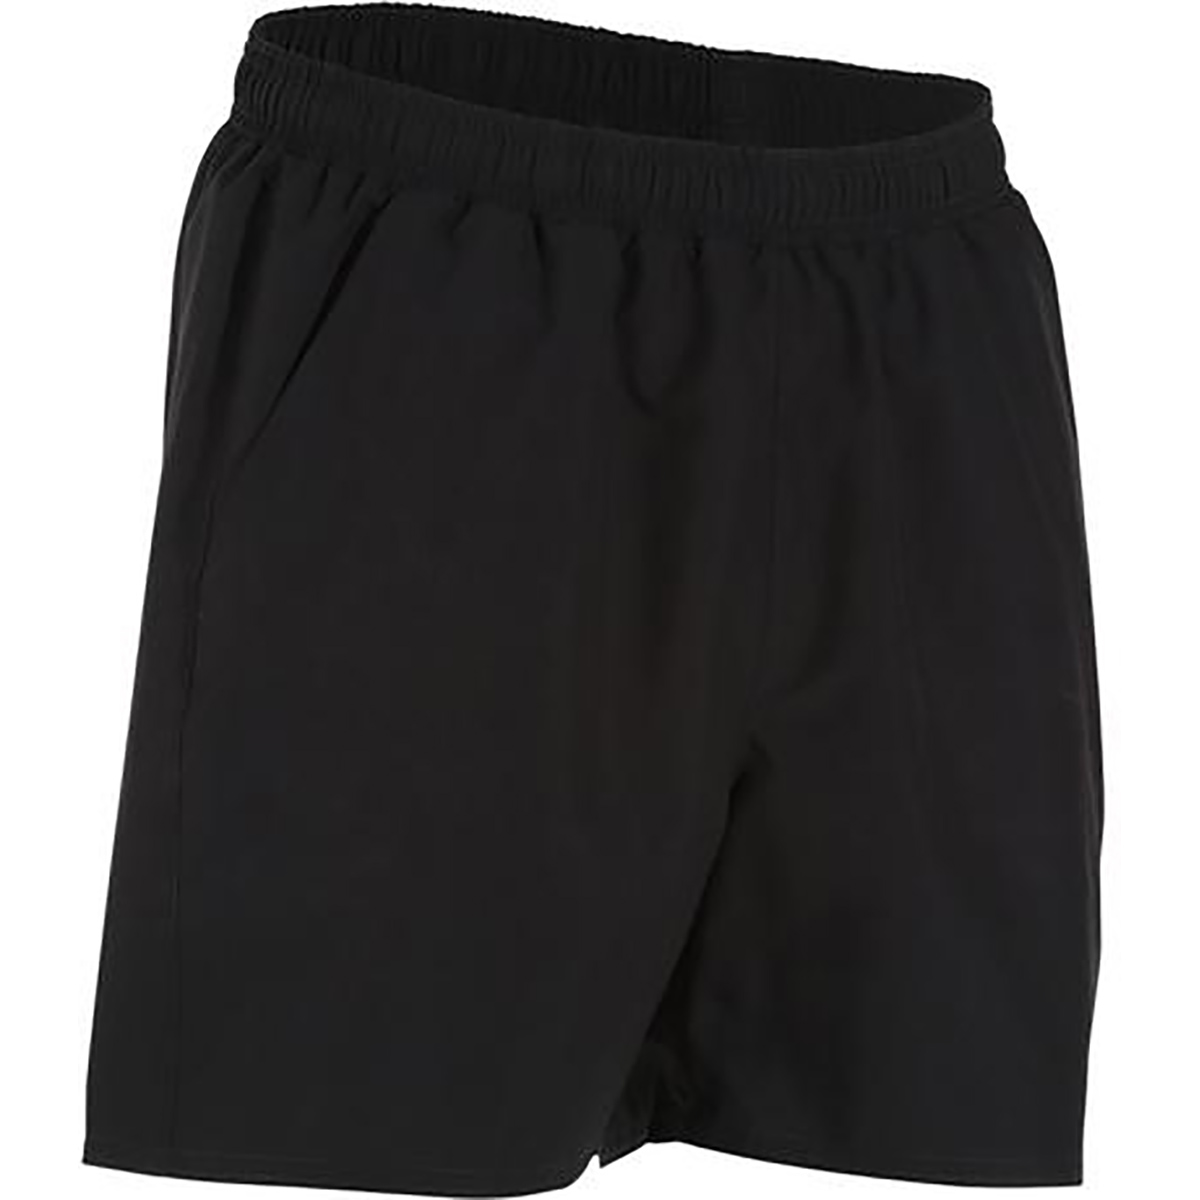 Domyos Energy Fitness Shorts - Black